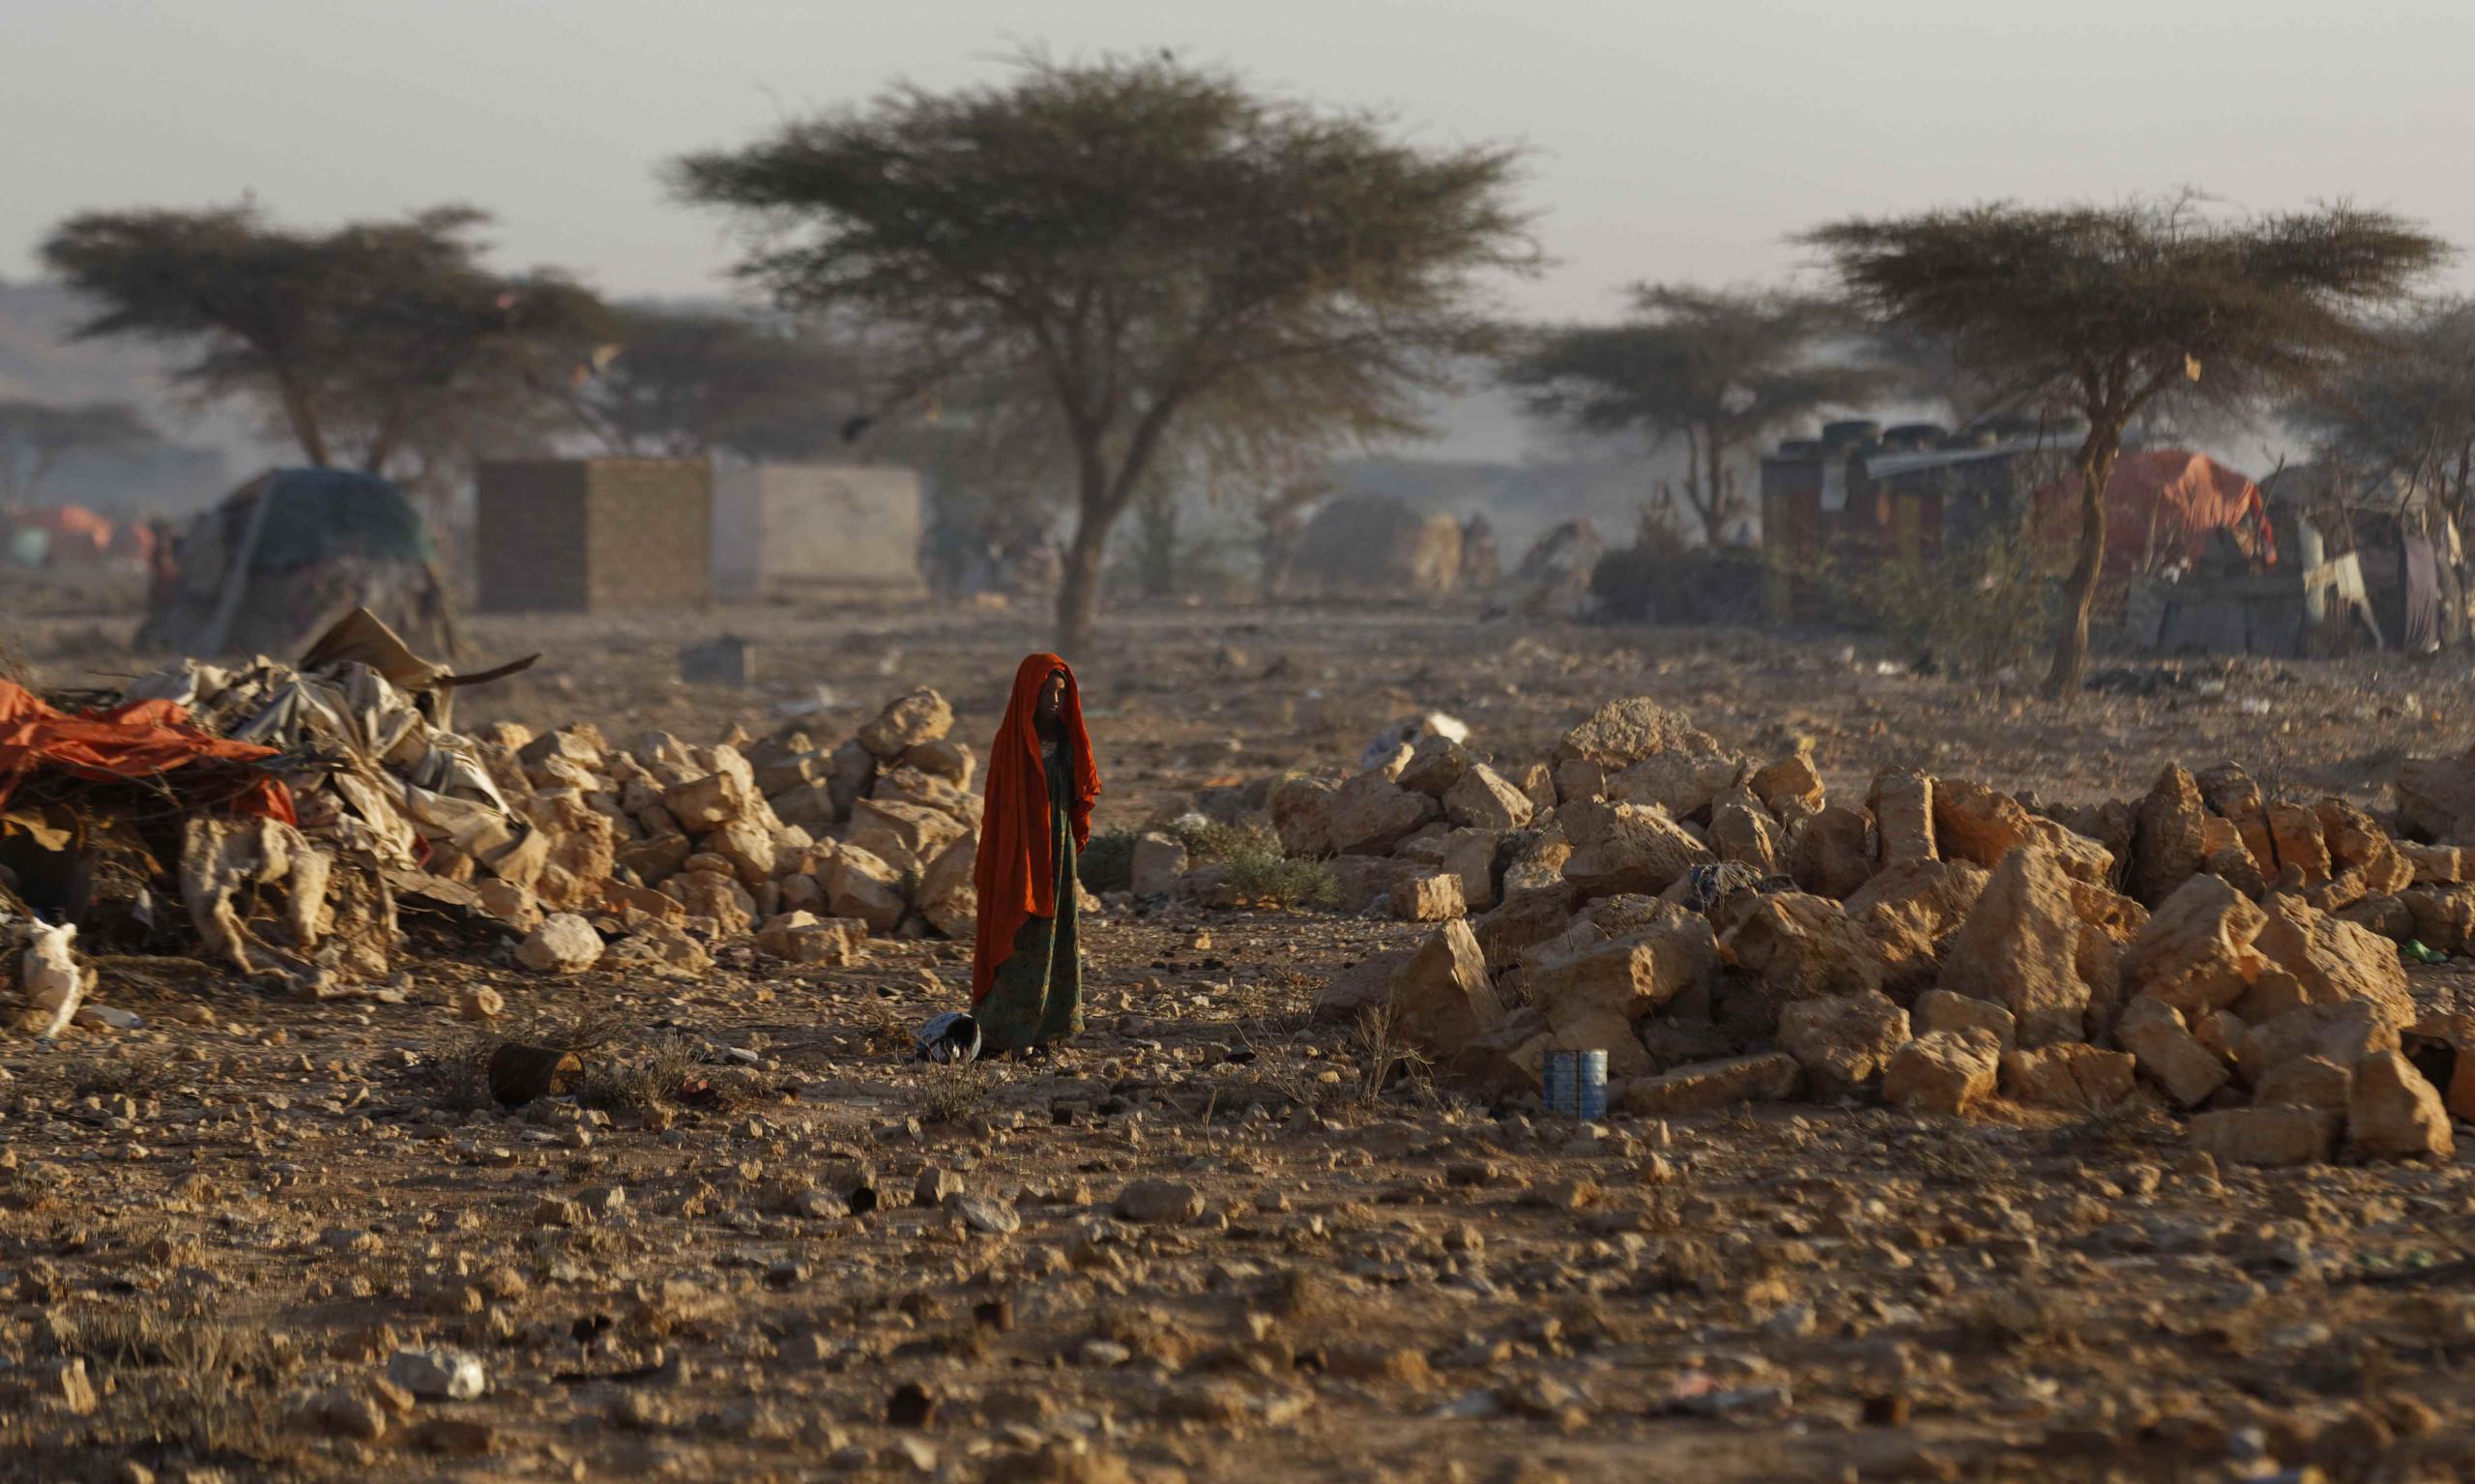 Una mujer somalí camina a través de un campamento de personas desplazadas de sus viviendas en otras partes del país debido a la sequía, poco después del amanecer en Qardho, Somalia, el jueves 9 de marzo de 2017. (AP)